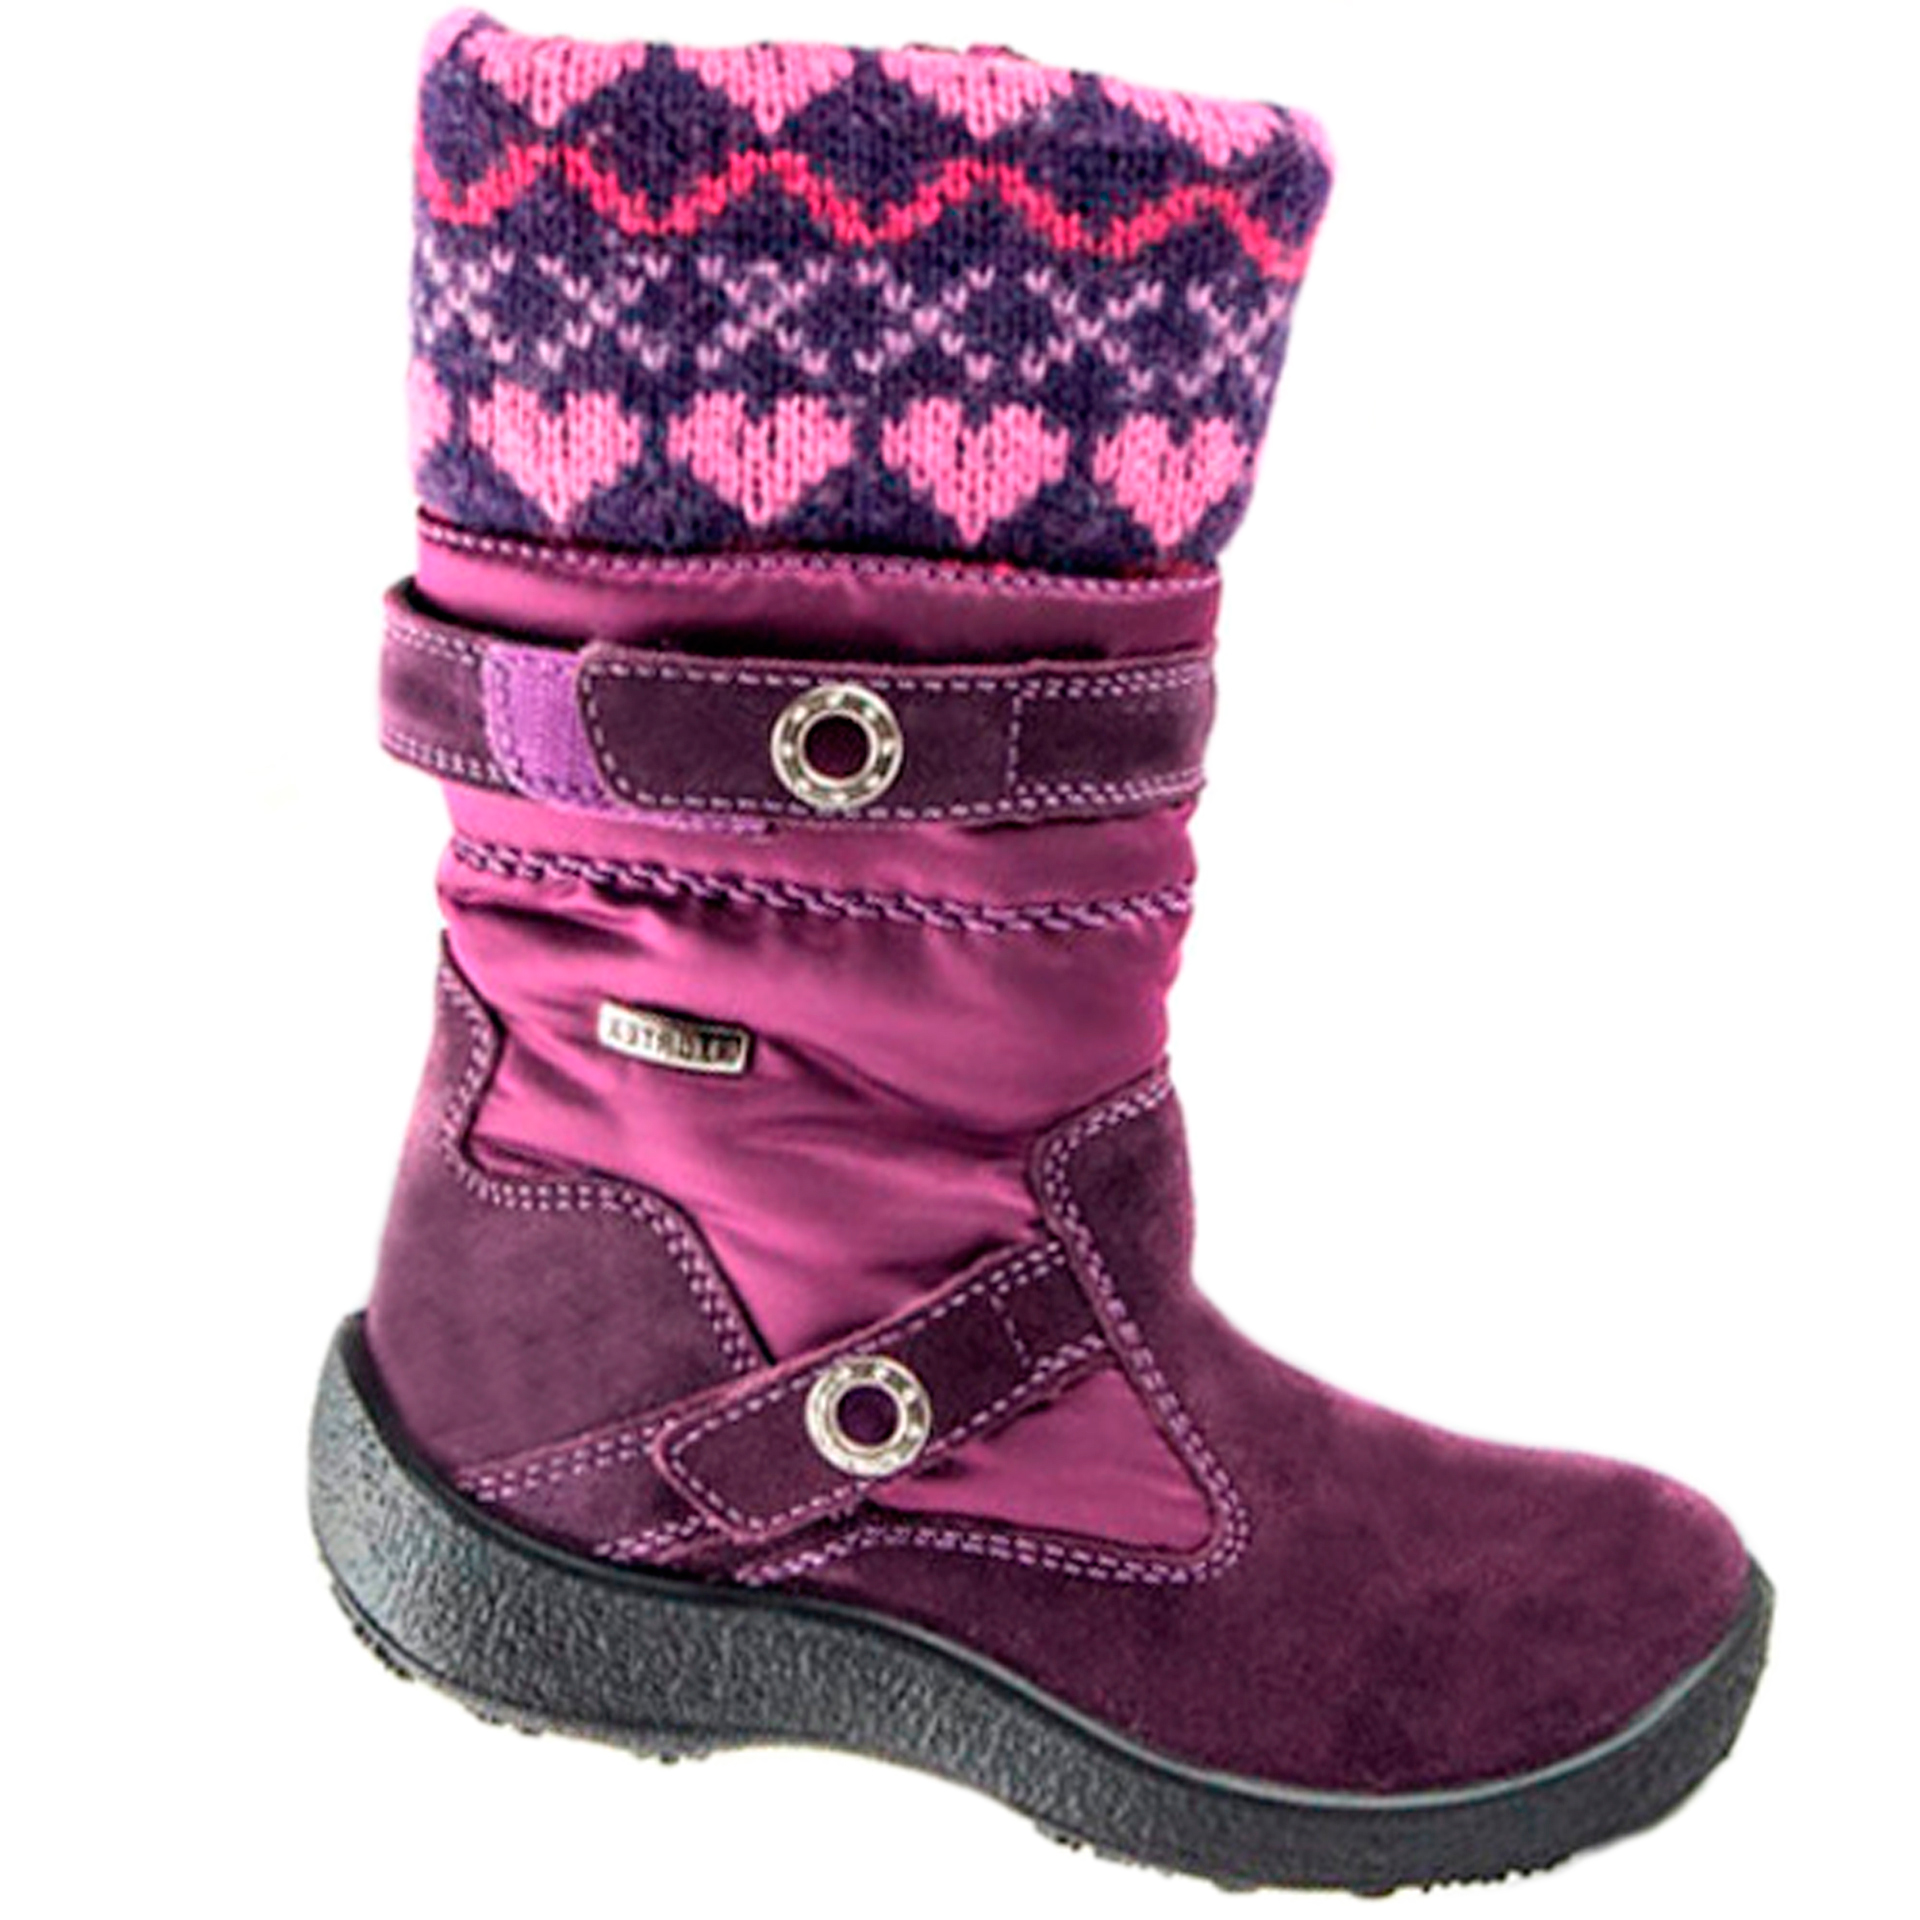 Floare Зимові чоботи (1320) для дівчинки, матеріал Мембрана, Фіолетовий колір, 27-32 розміри